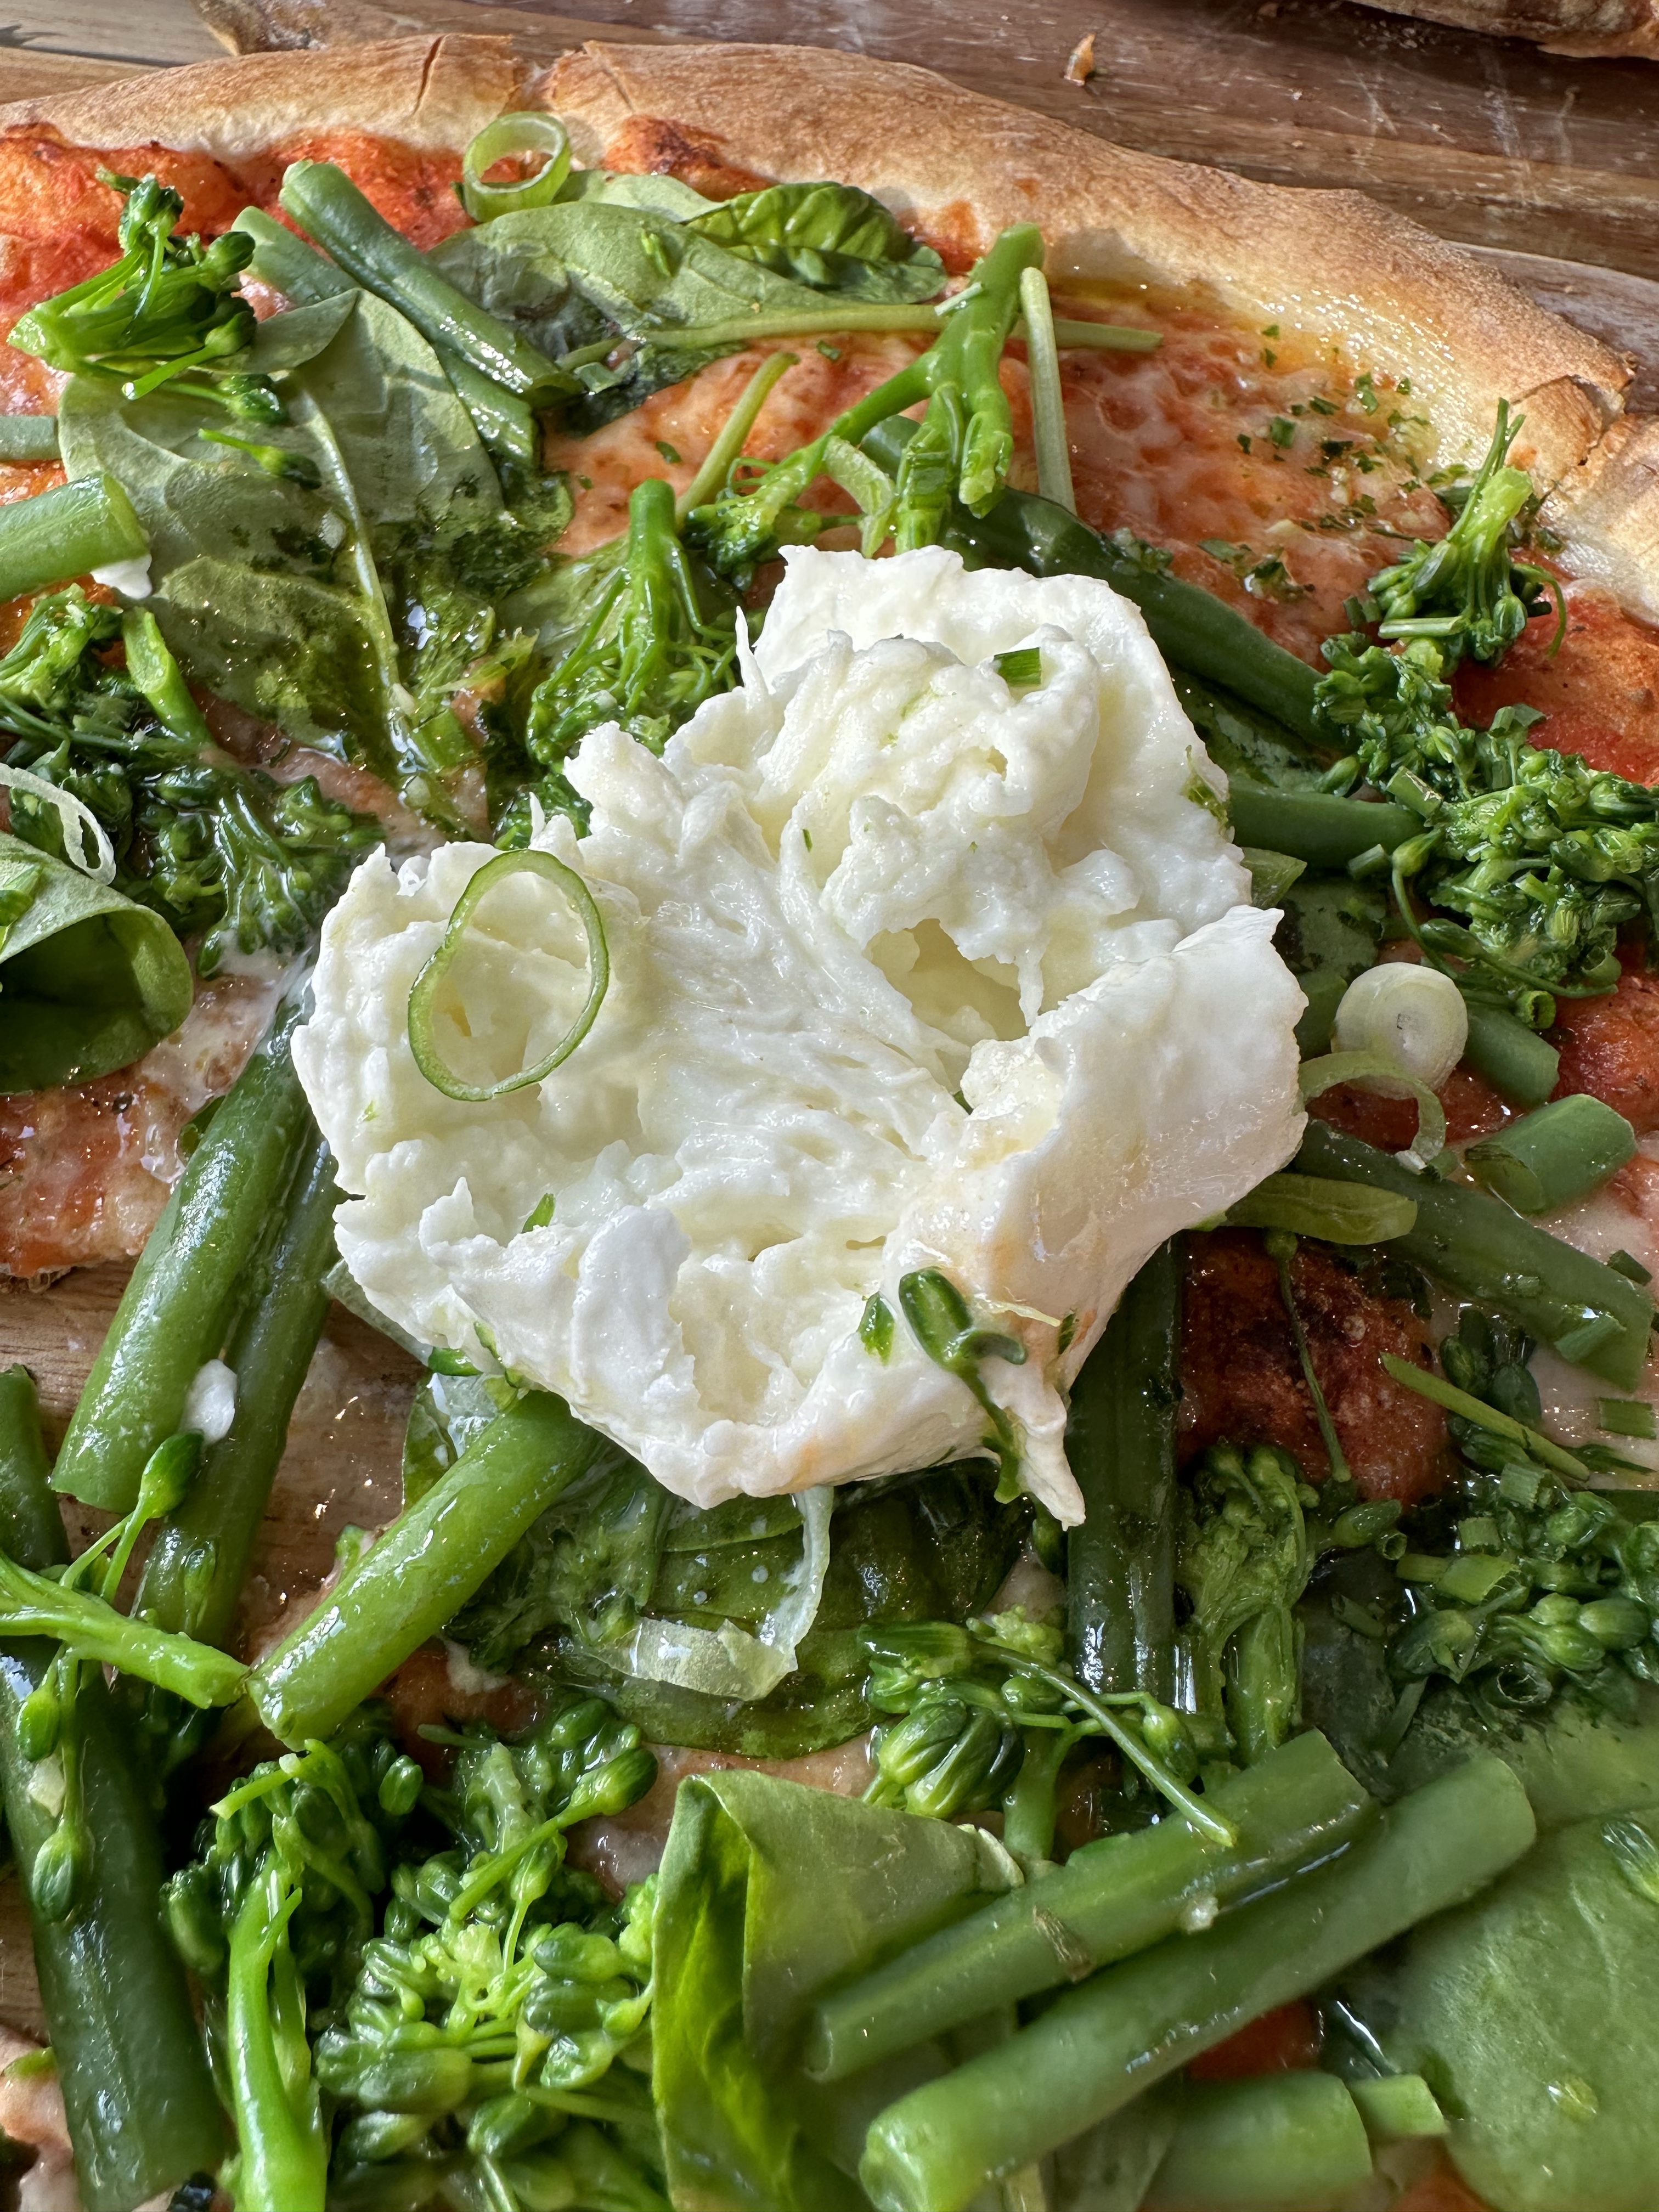 Pizza with veggies